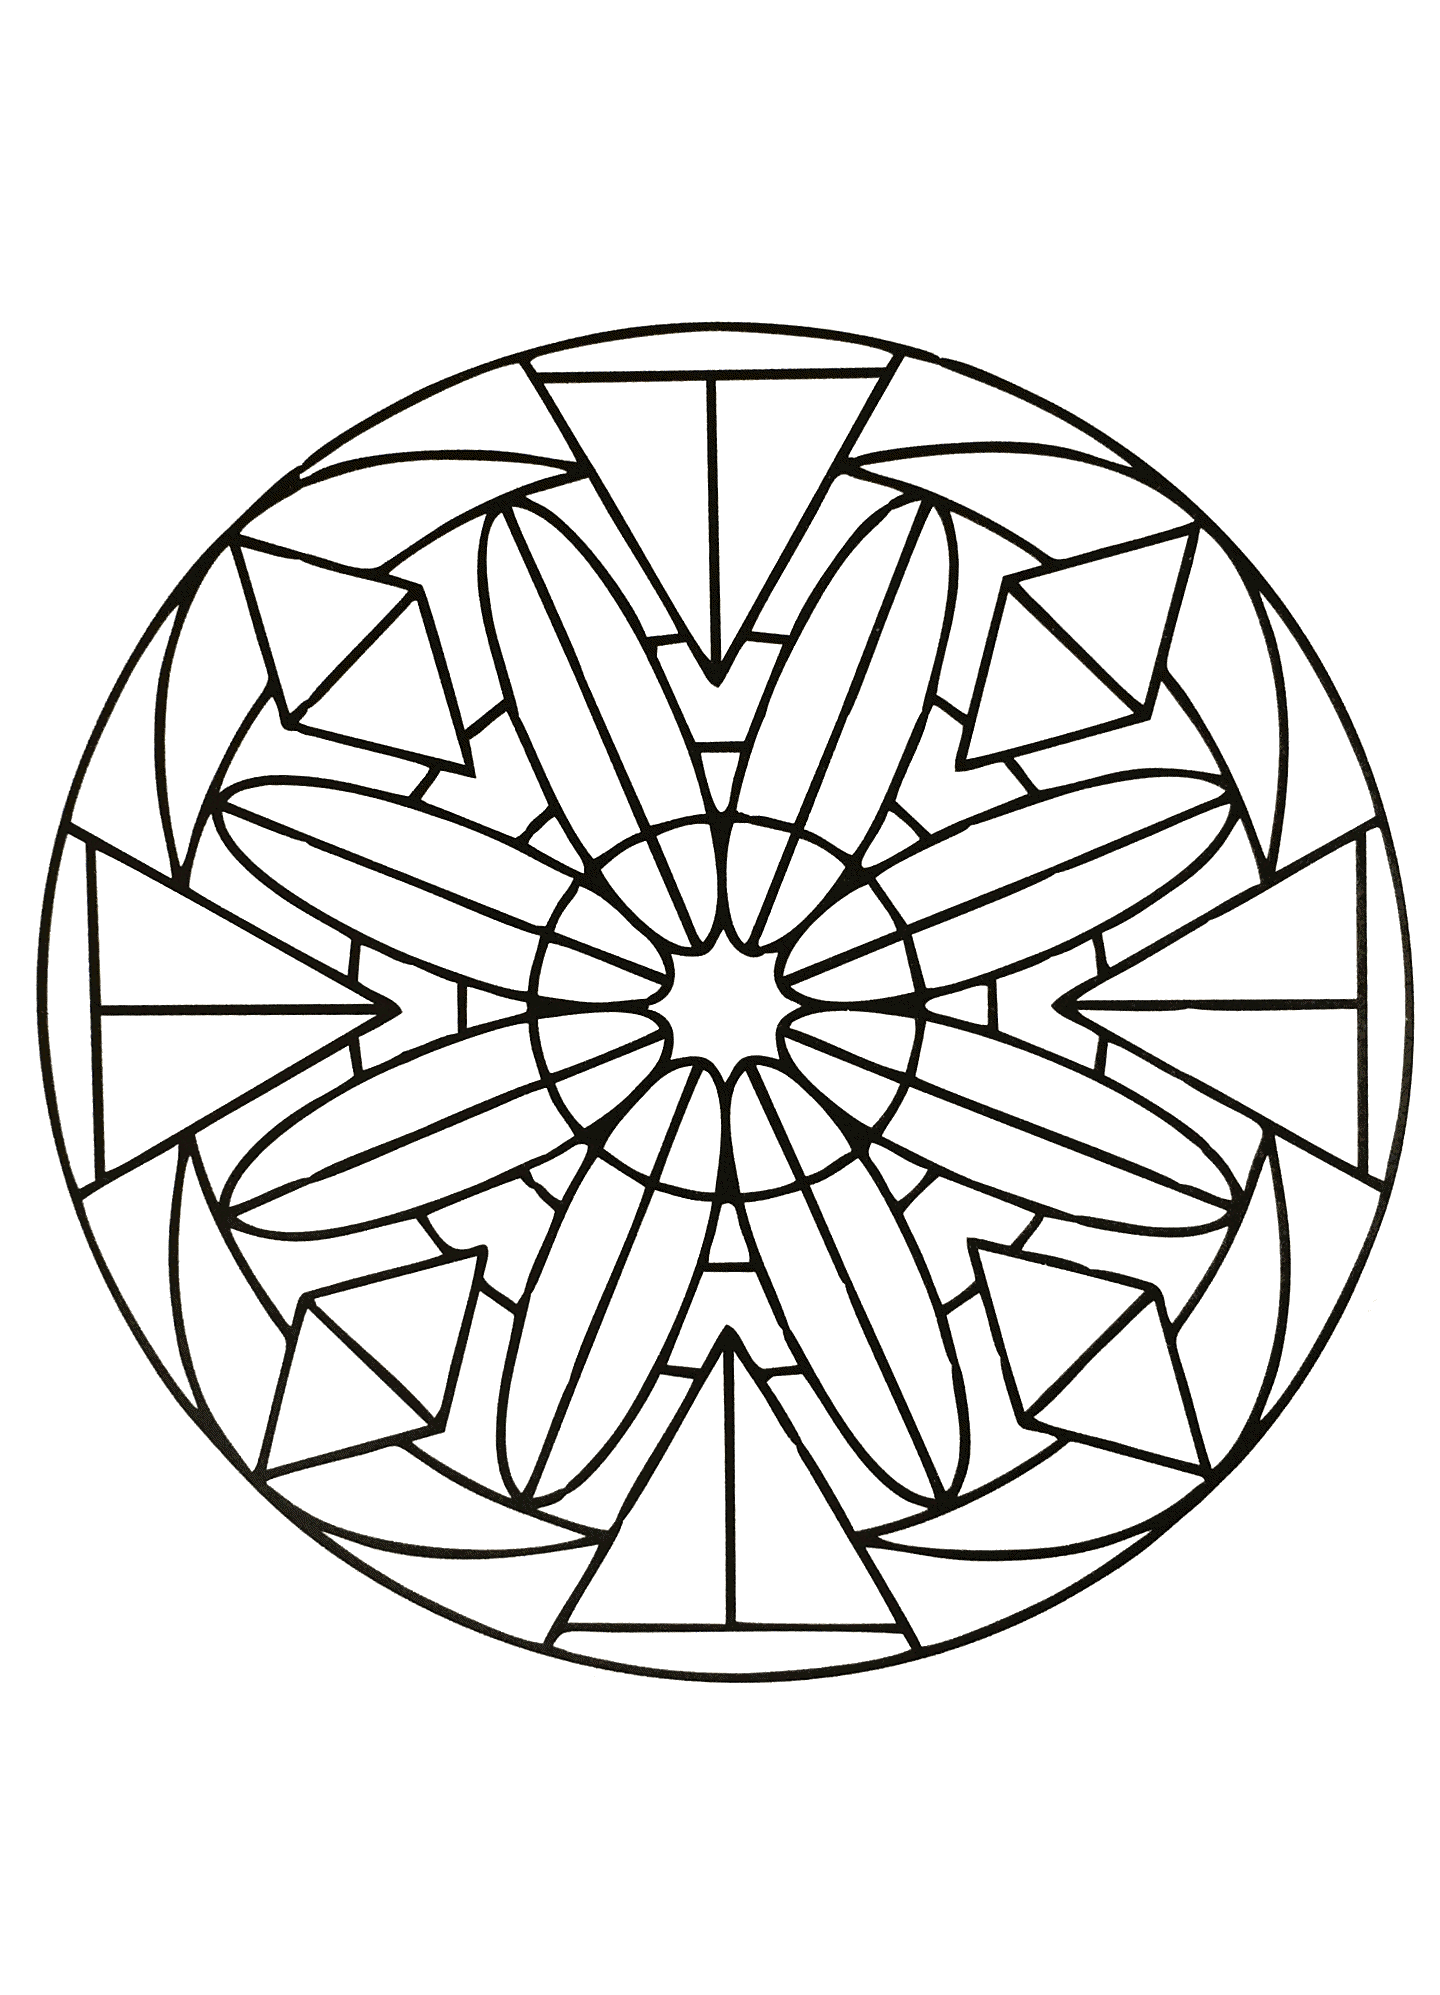 Un Mandala symétrique, parfait si vous avez envie de simplicité ou que vous disposez de peu de temps pour colorier.